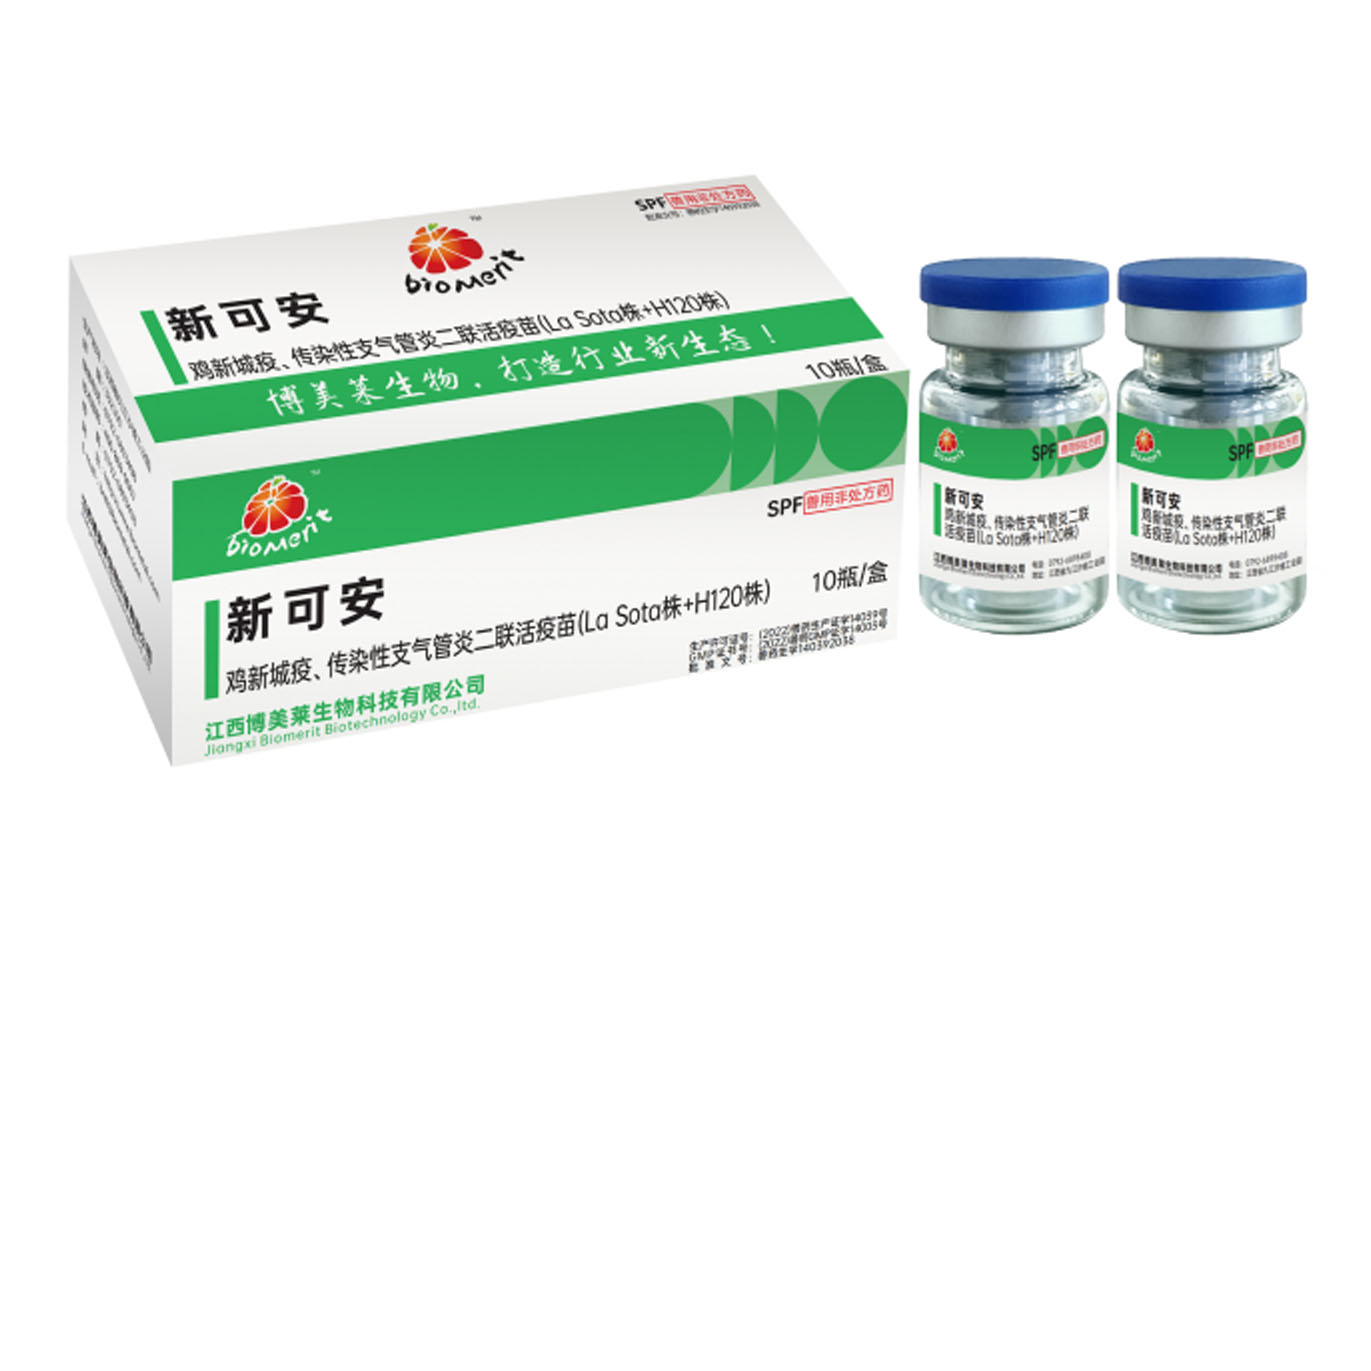 新可安—鸡新城疫、鸡传染性支气管炎二联活疫苗（ La sota株+H120株)